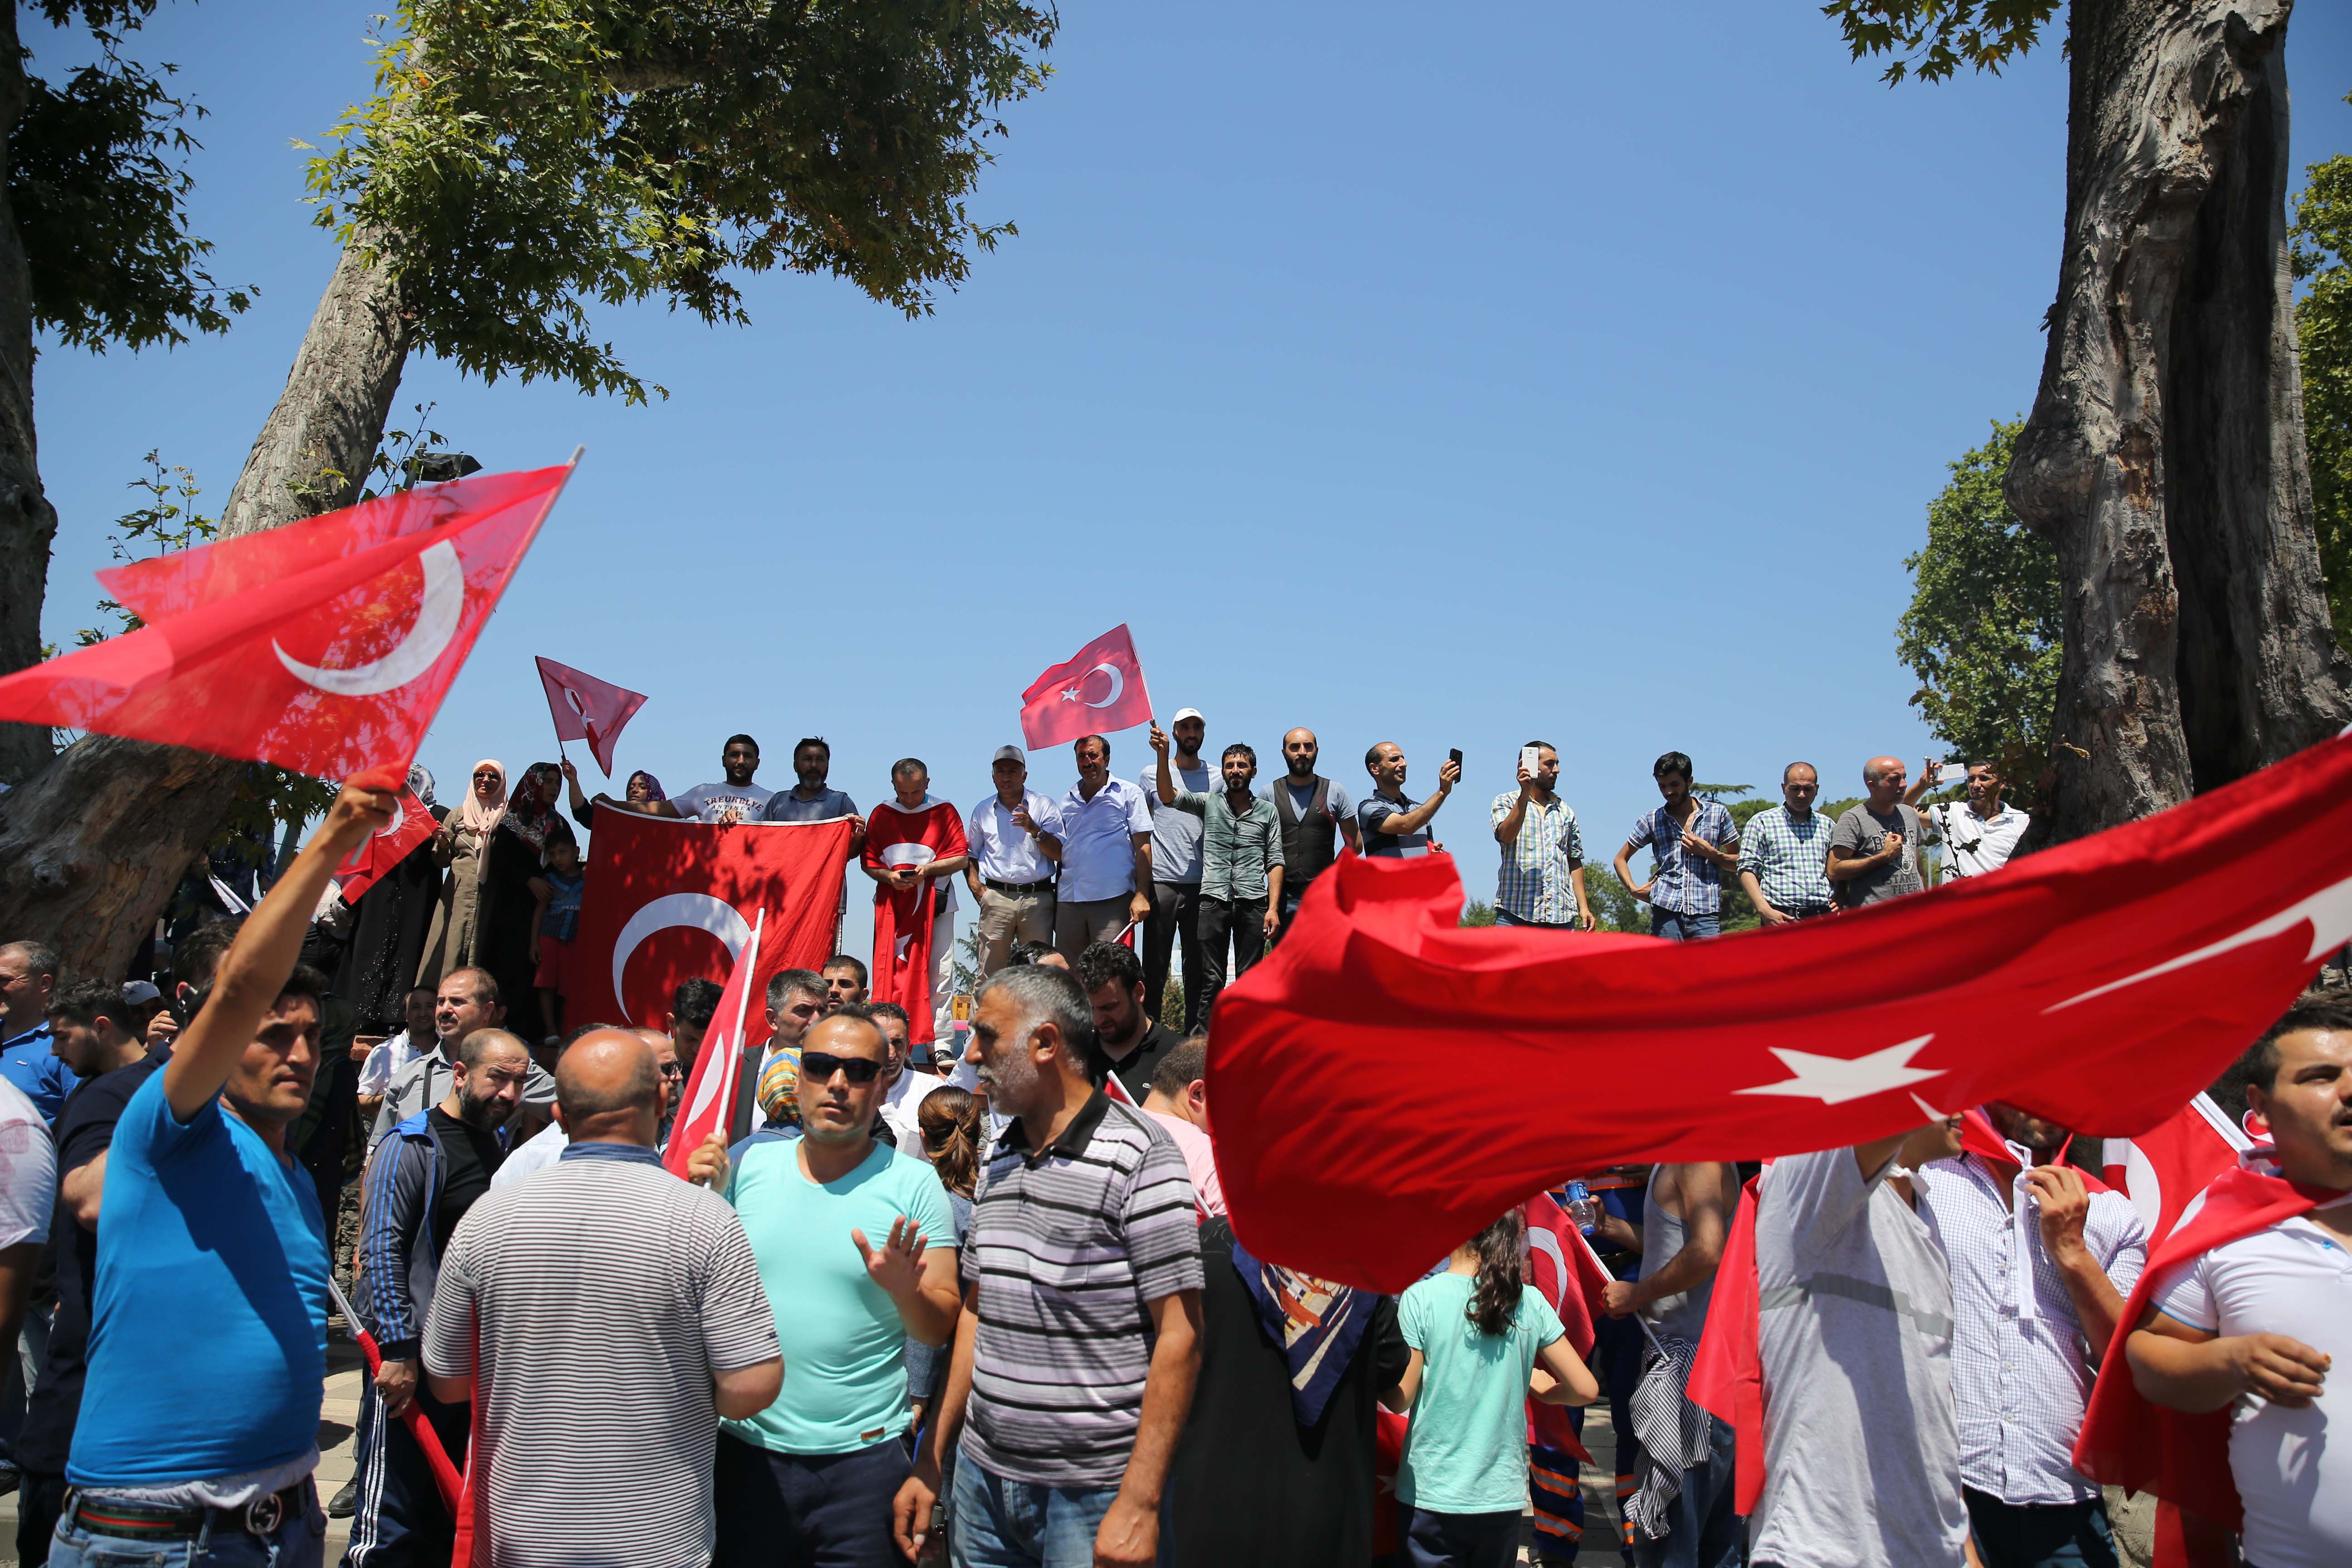 المواطنون يقومون بالحراسة وينتظرون بالأعلام التركية في أيديهم.